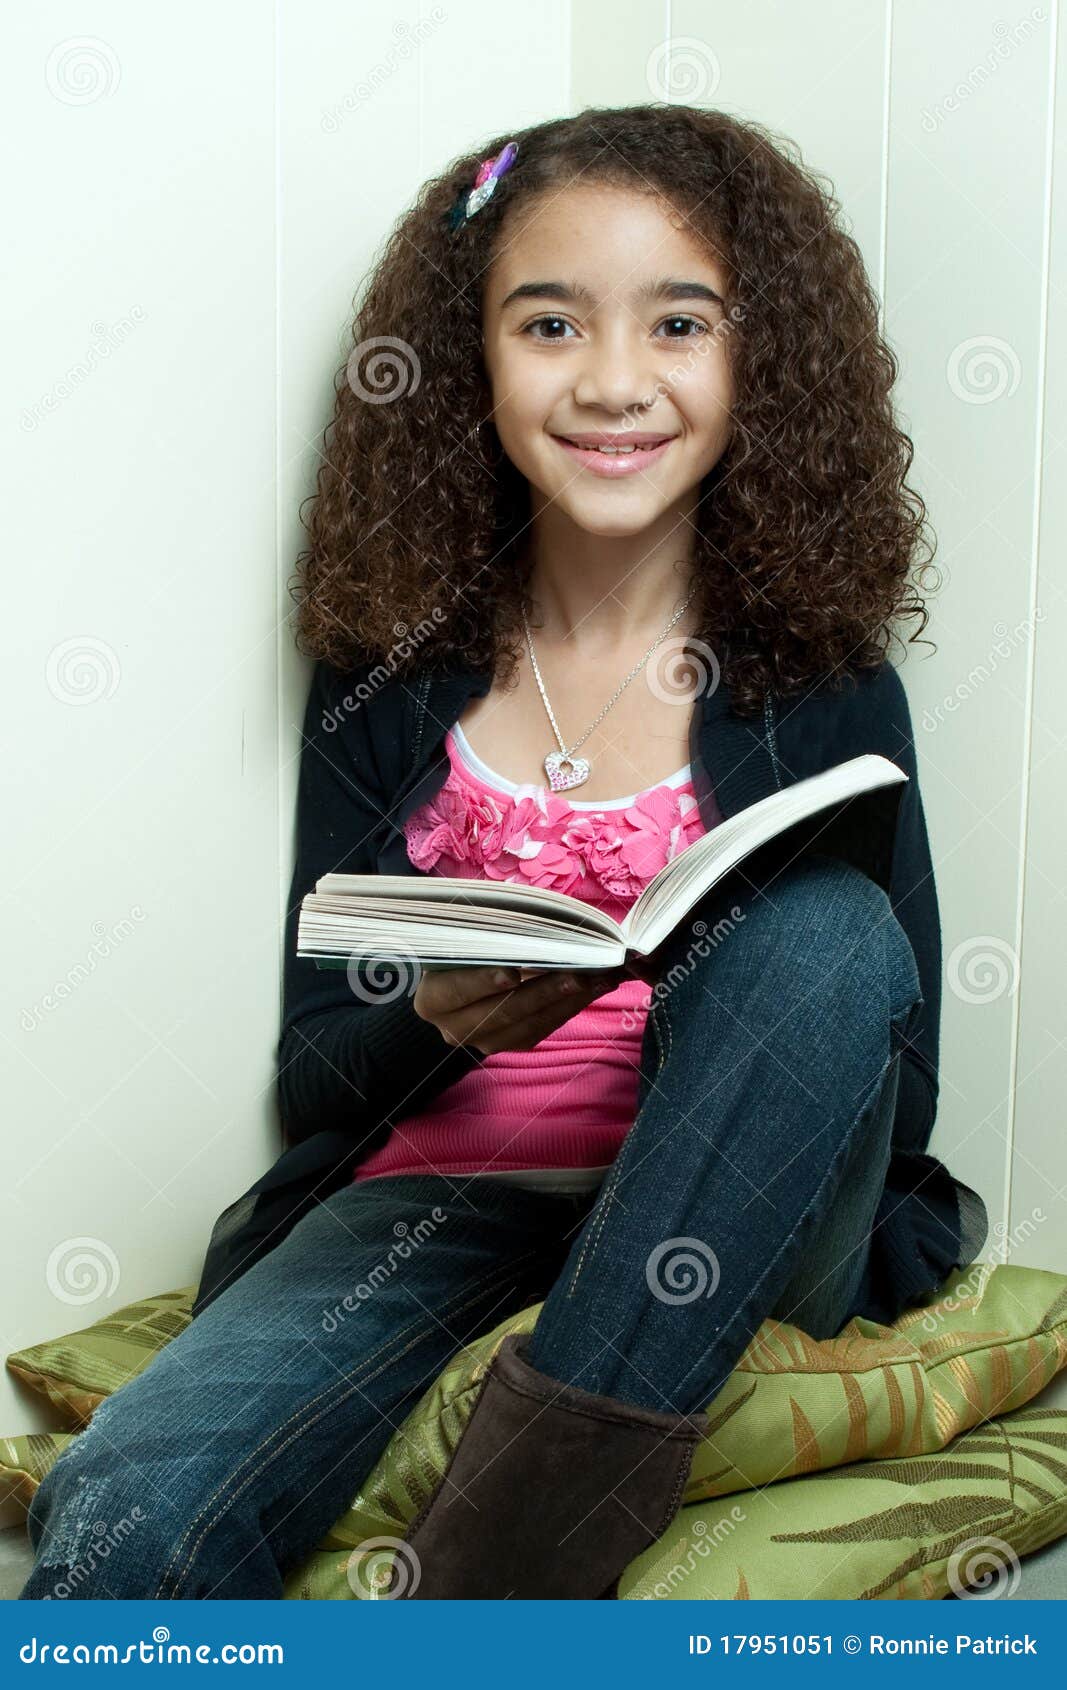 Leitura da rapariga no canto. Menina descasc escura nova com o cabelo curly, sentando-se em um canto em coxins, lendo um livro, sorrindo e olhando a câmera.